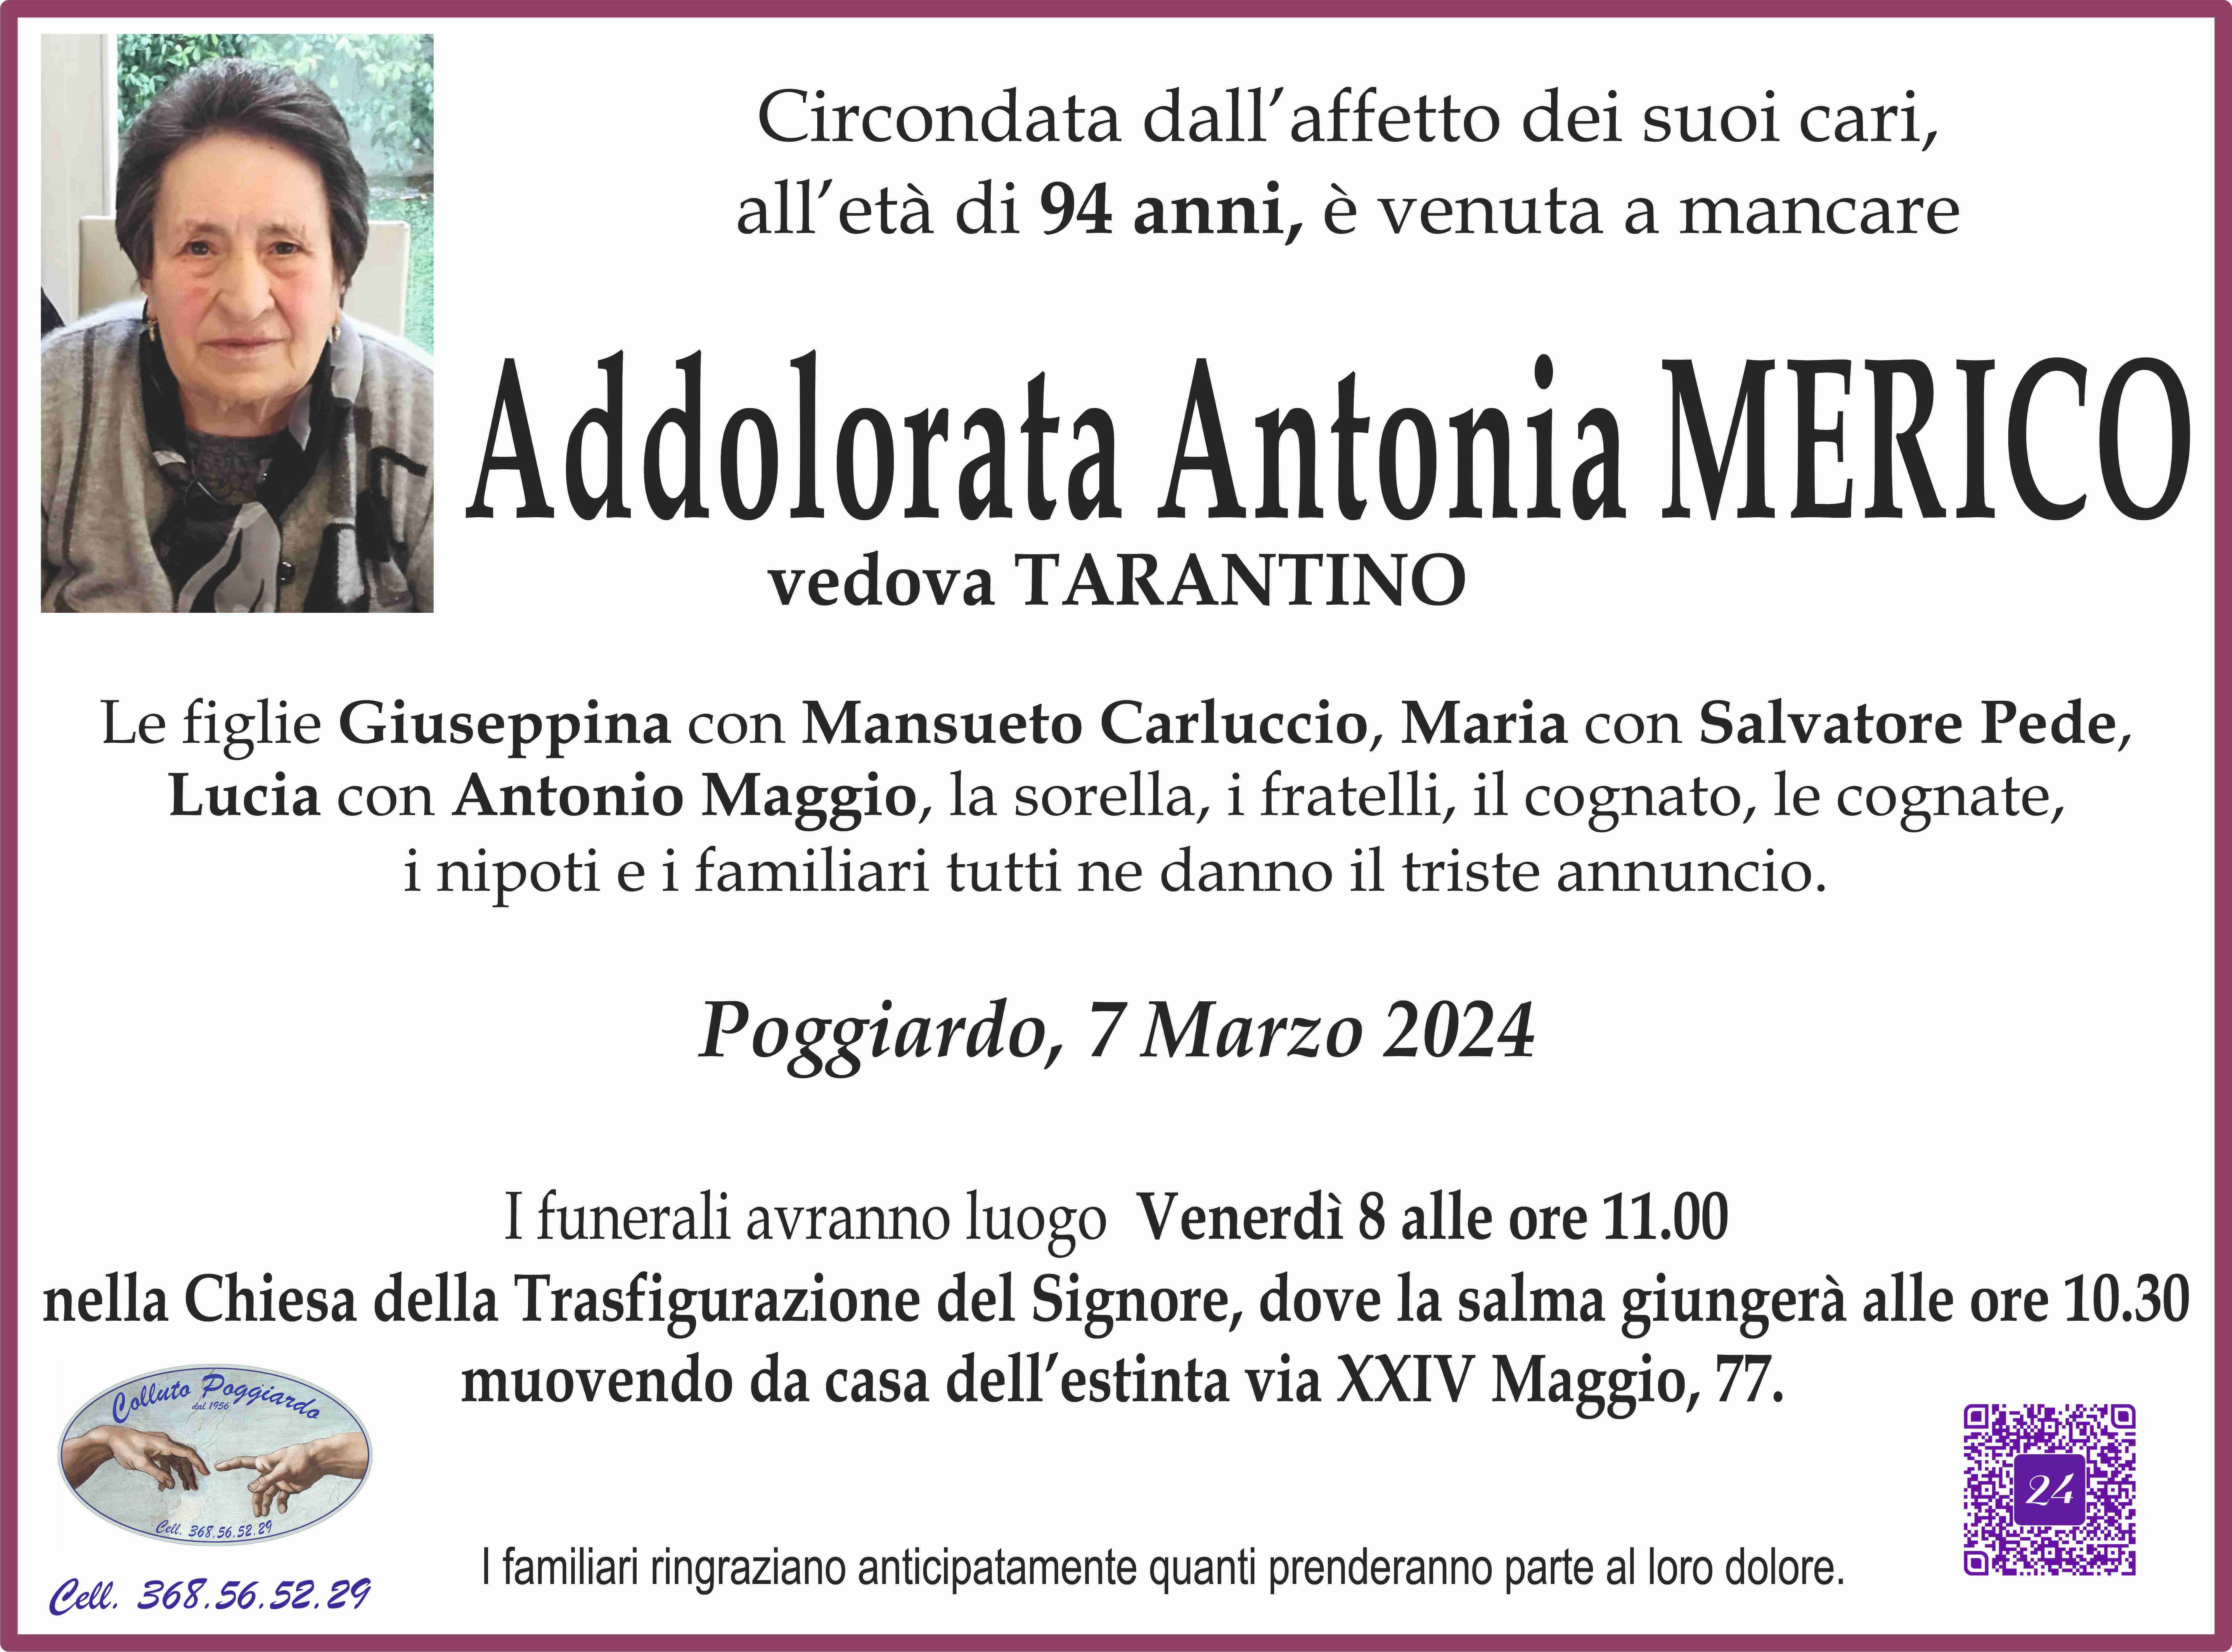 Addolorata Antonia Merico